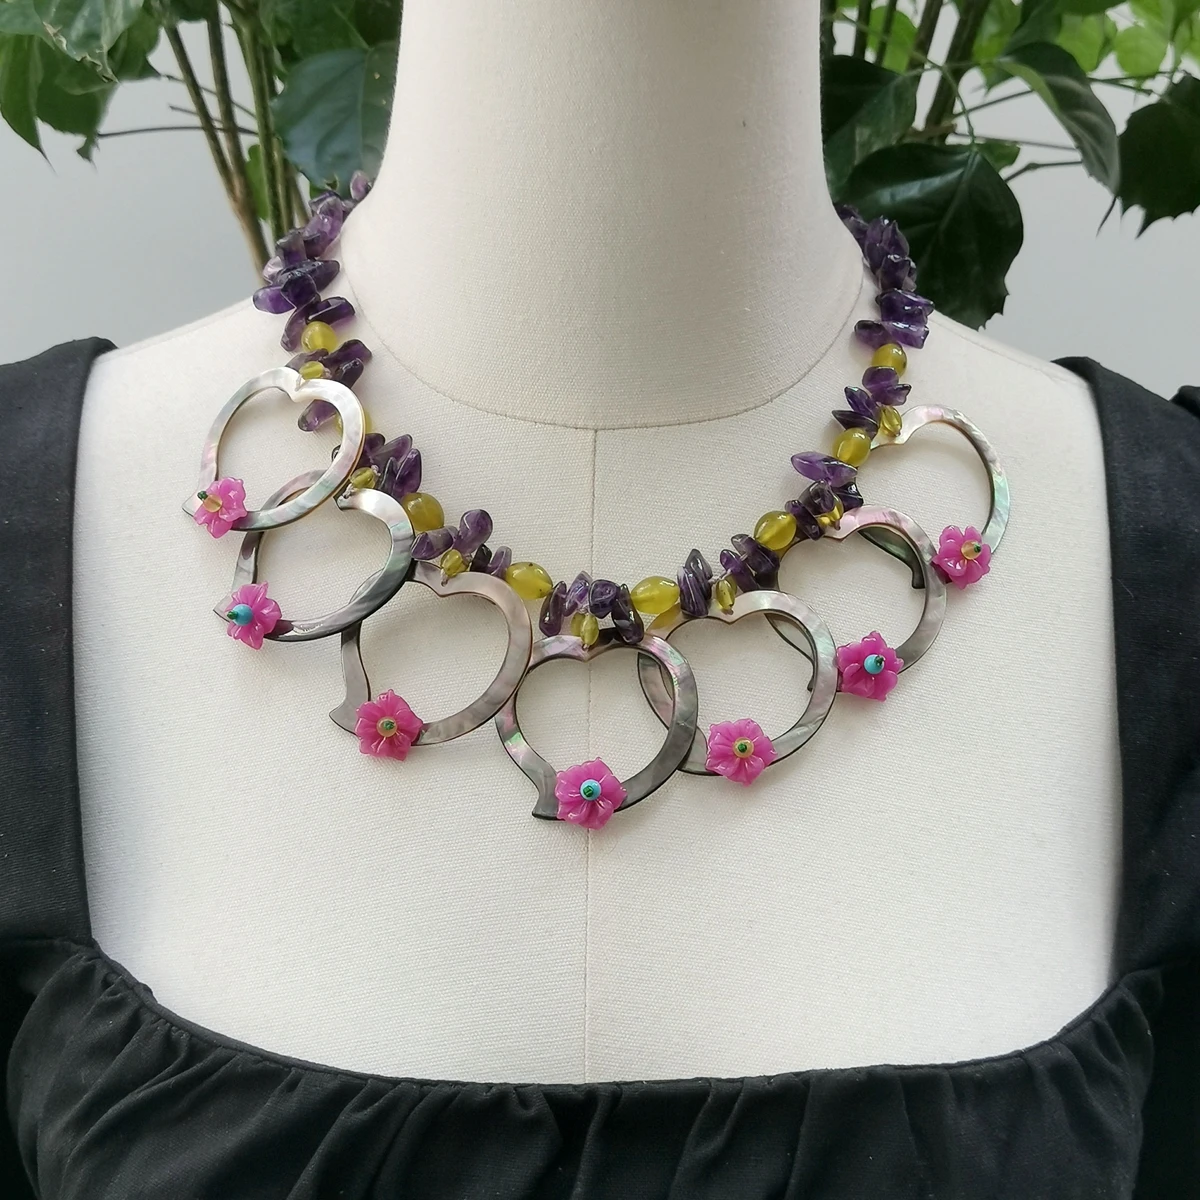 

Женское Ожерелье Lii Ji из натурального камня разных цветов, 50 см, Цвет Аметист, цвет розовая яшма, перламутровое ожерелье